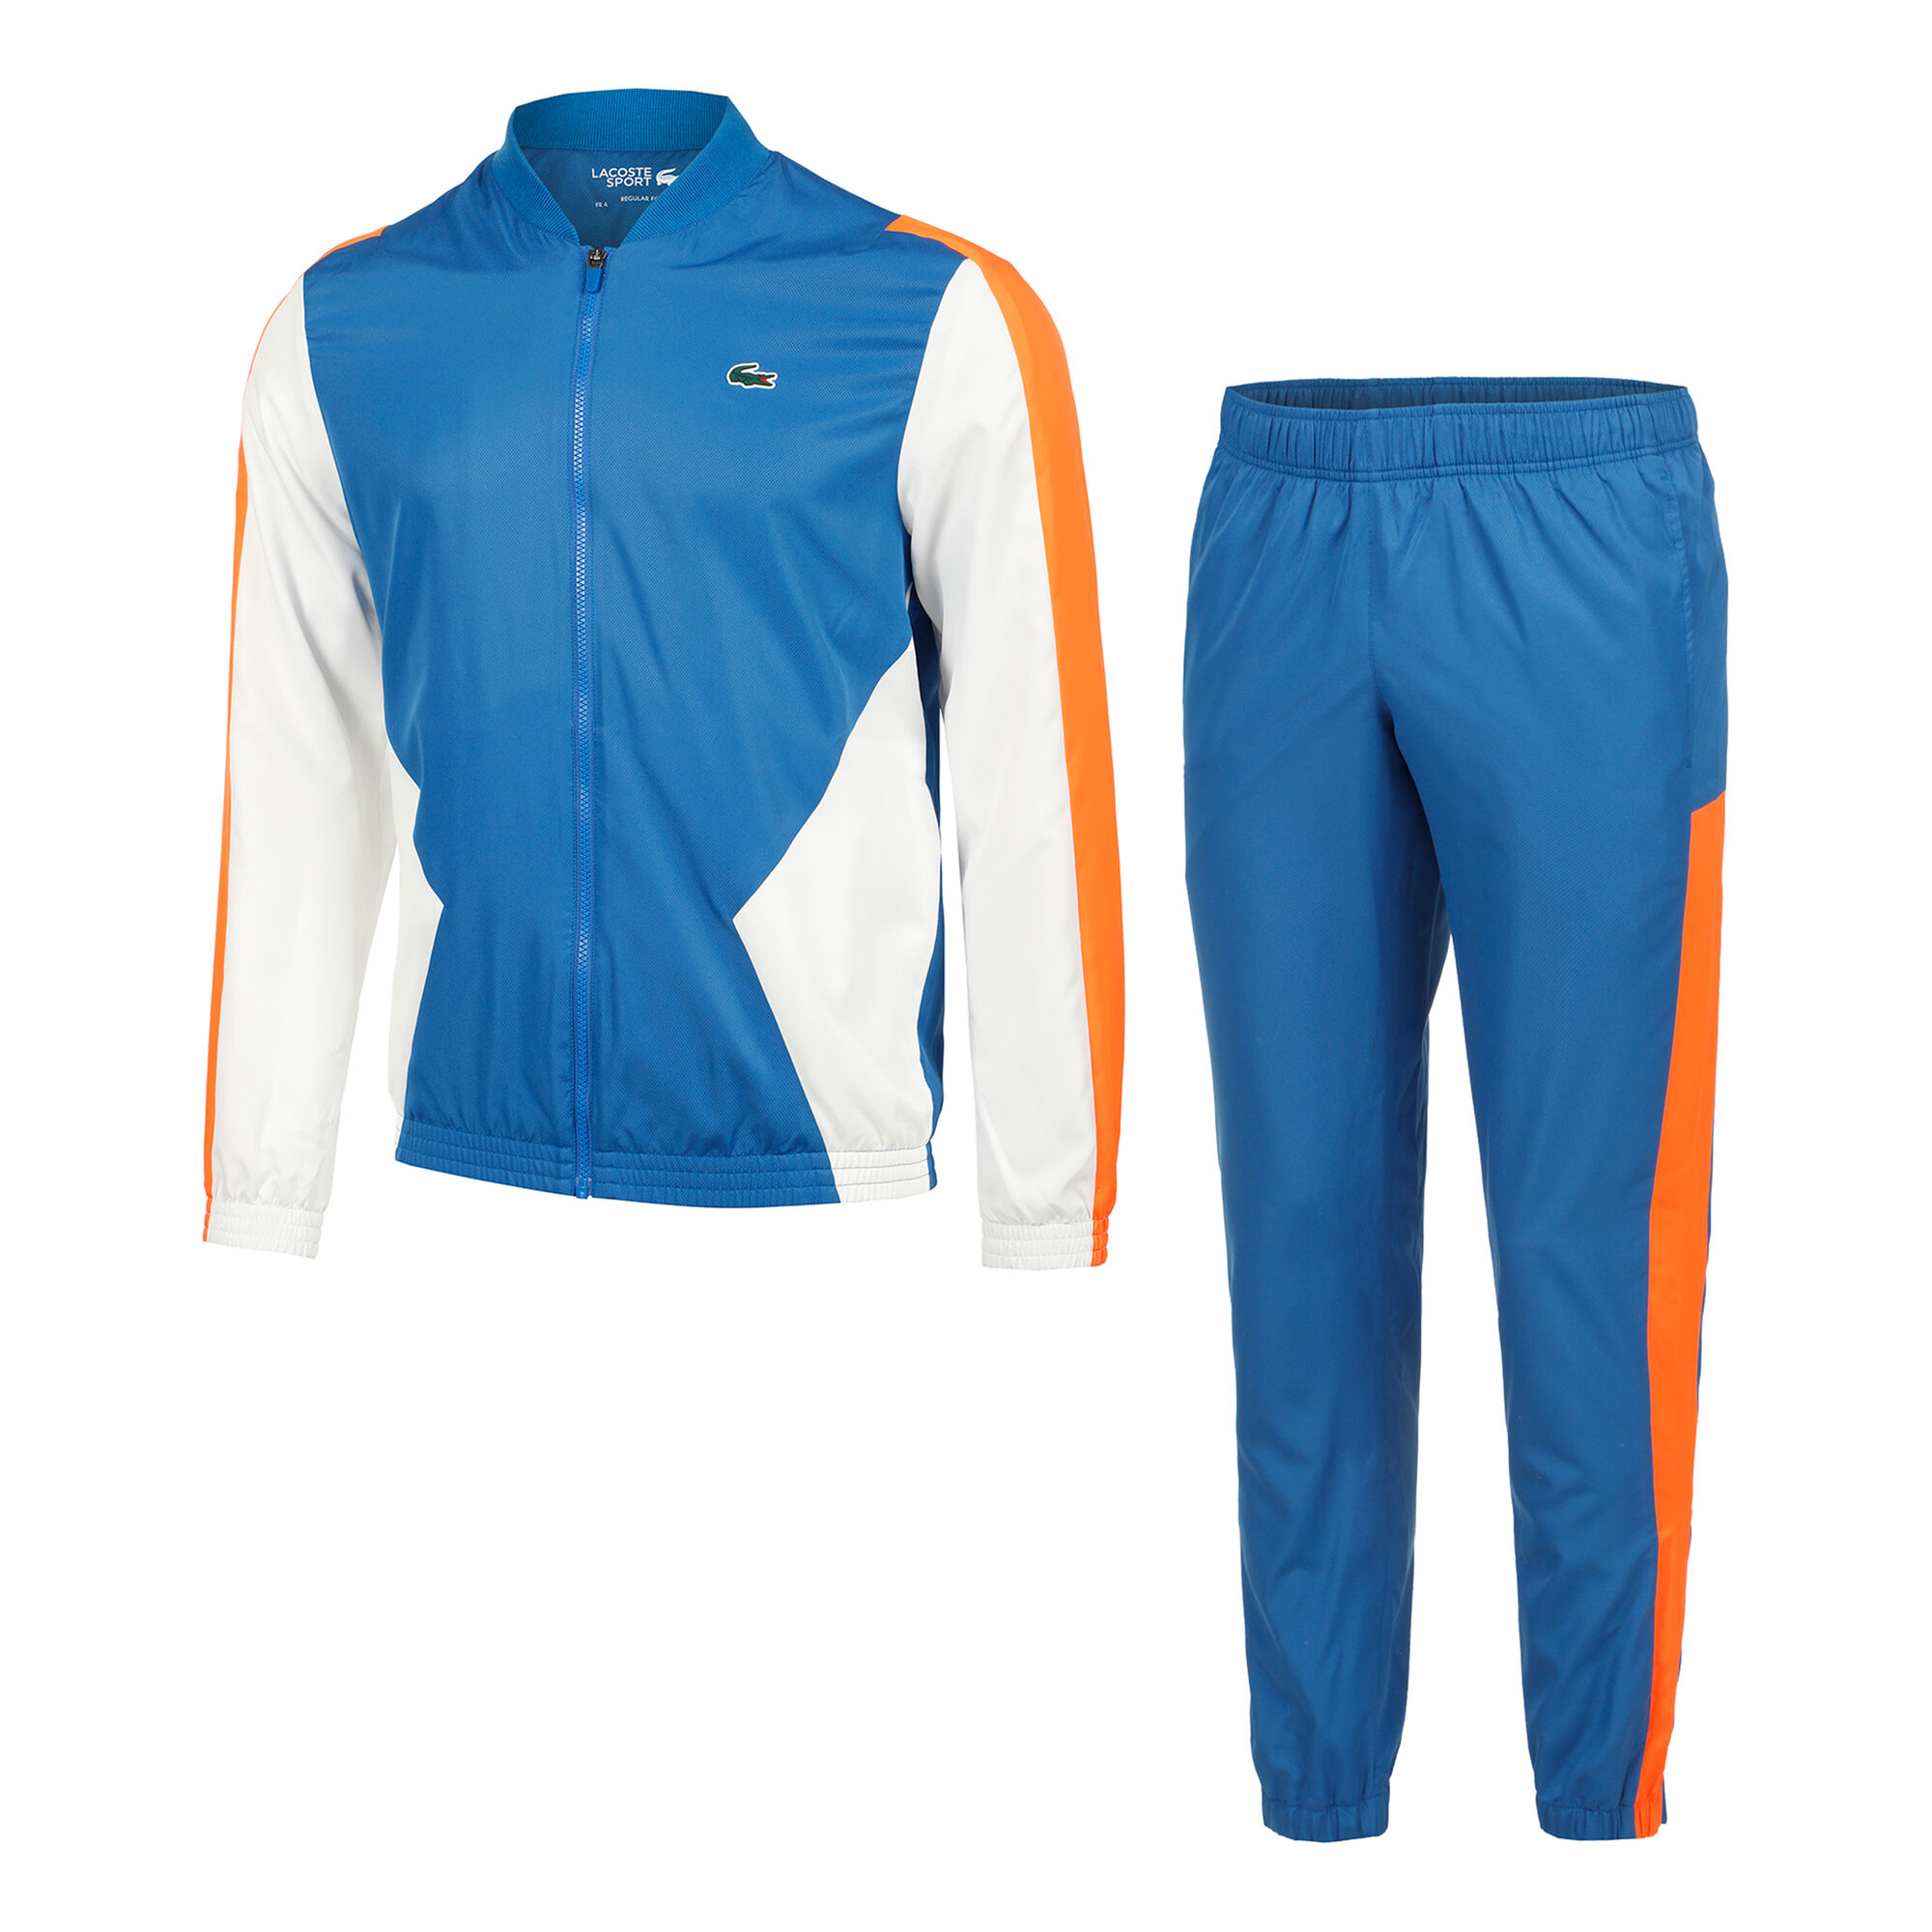 Buy Lacoste Tracksuit Men Blue, Orange online | Tennis Point COM